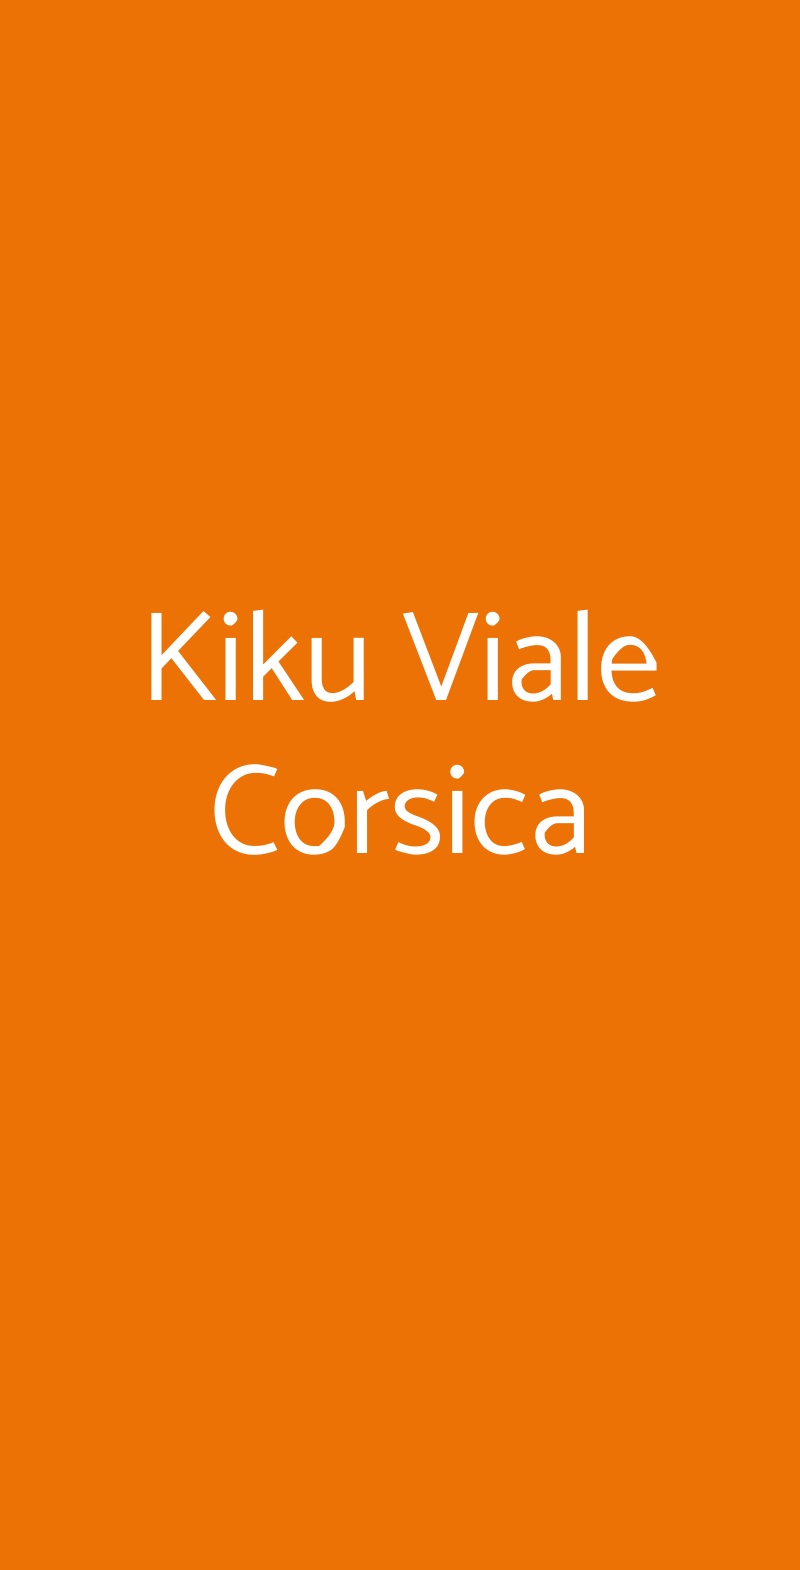 Kiku Viale Corsica Milano menù 1 pagina